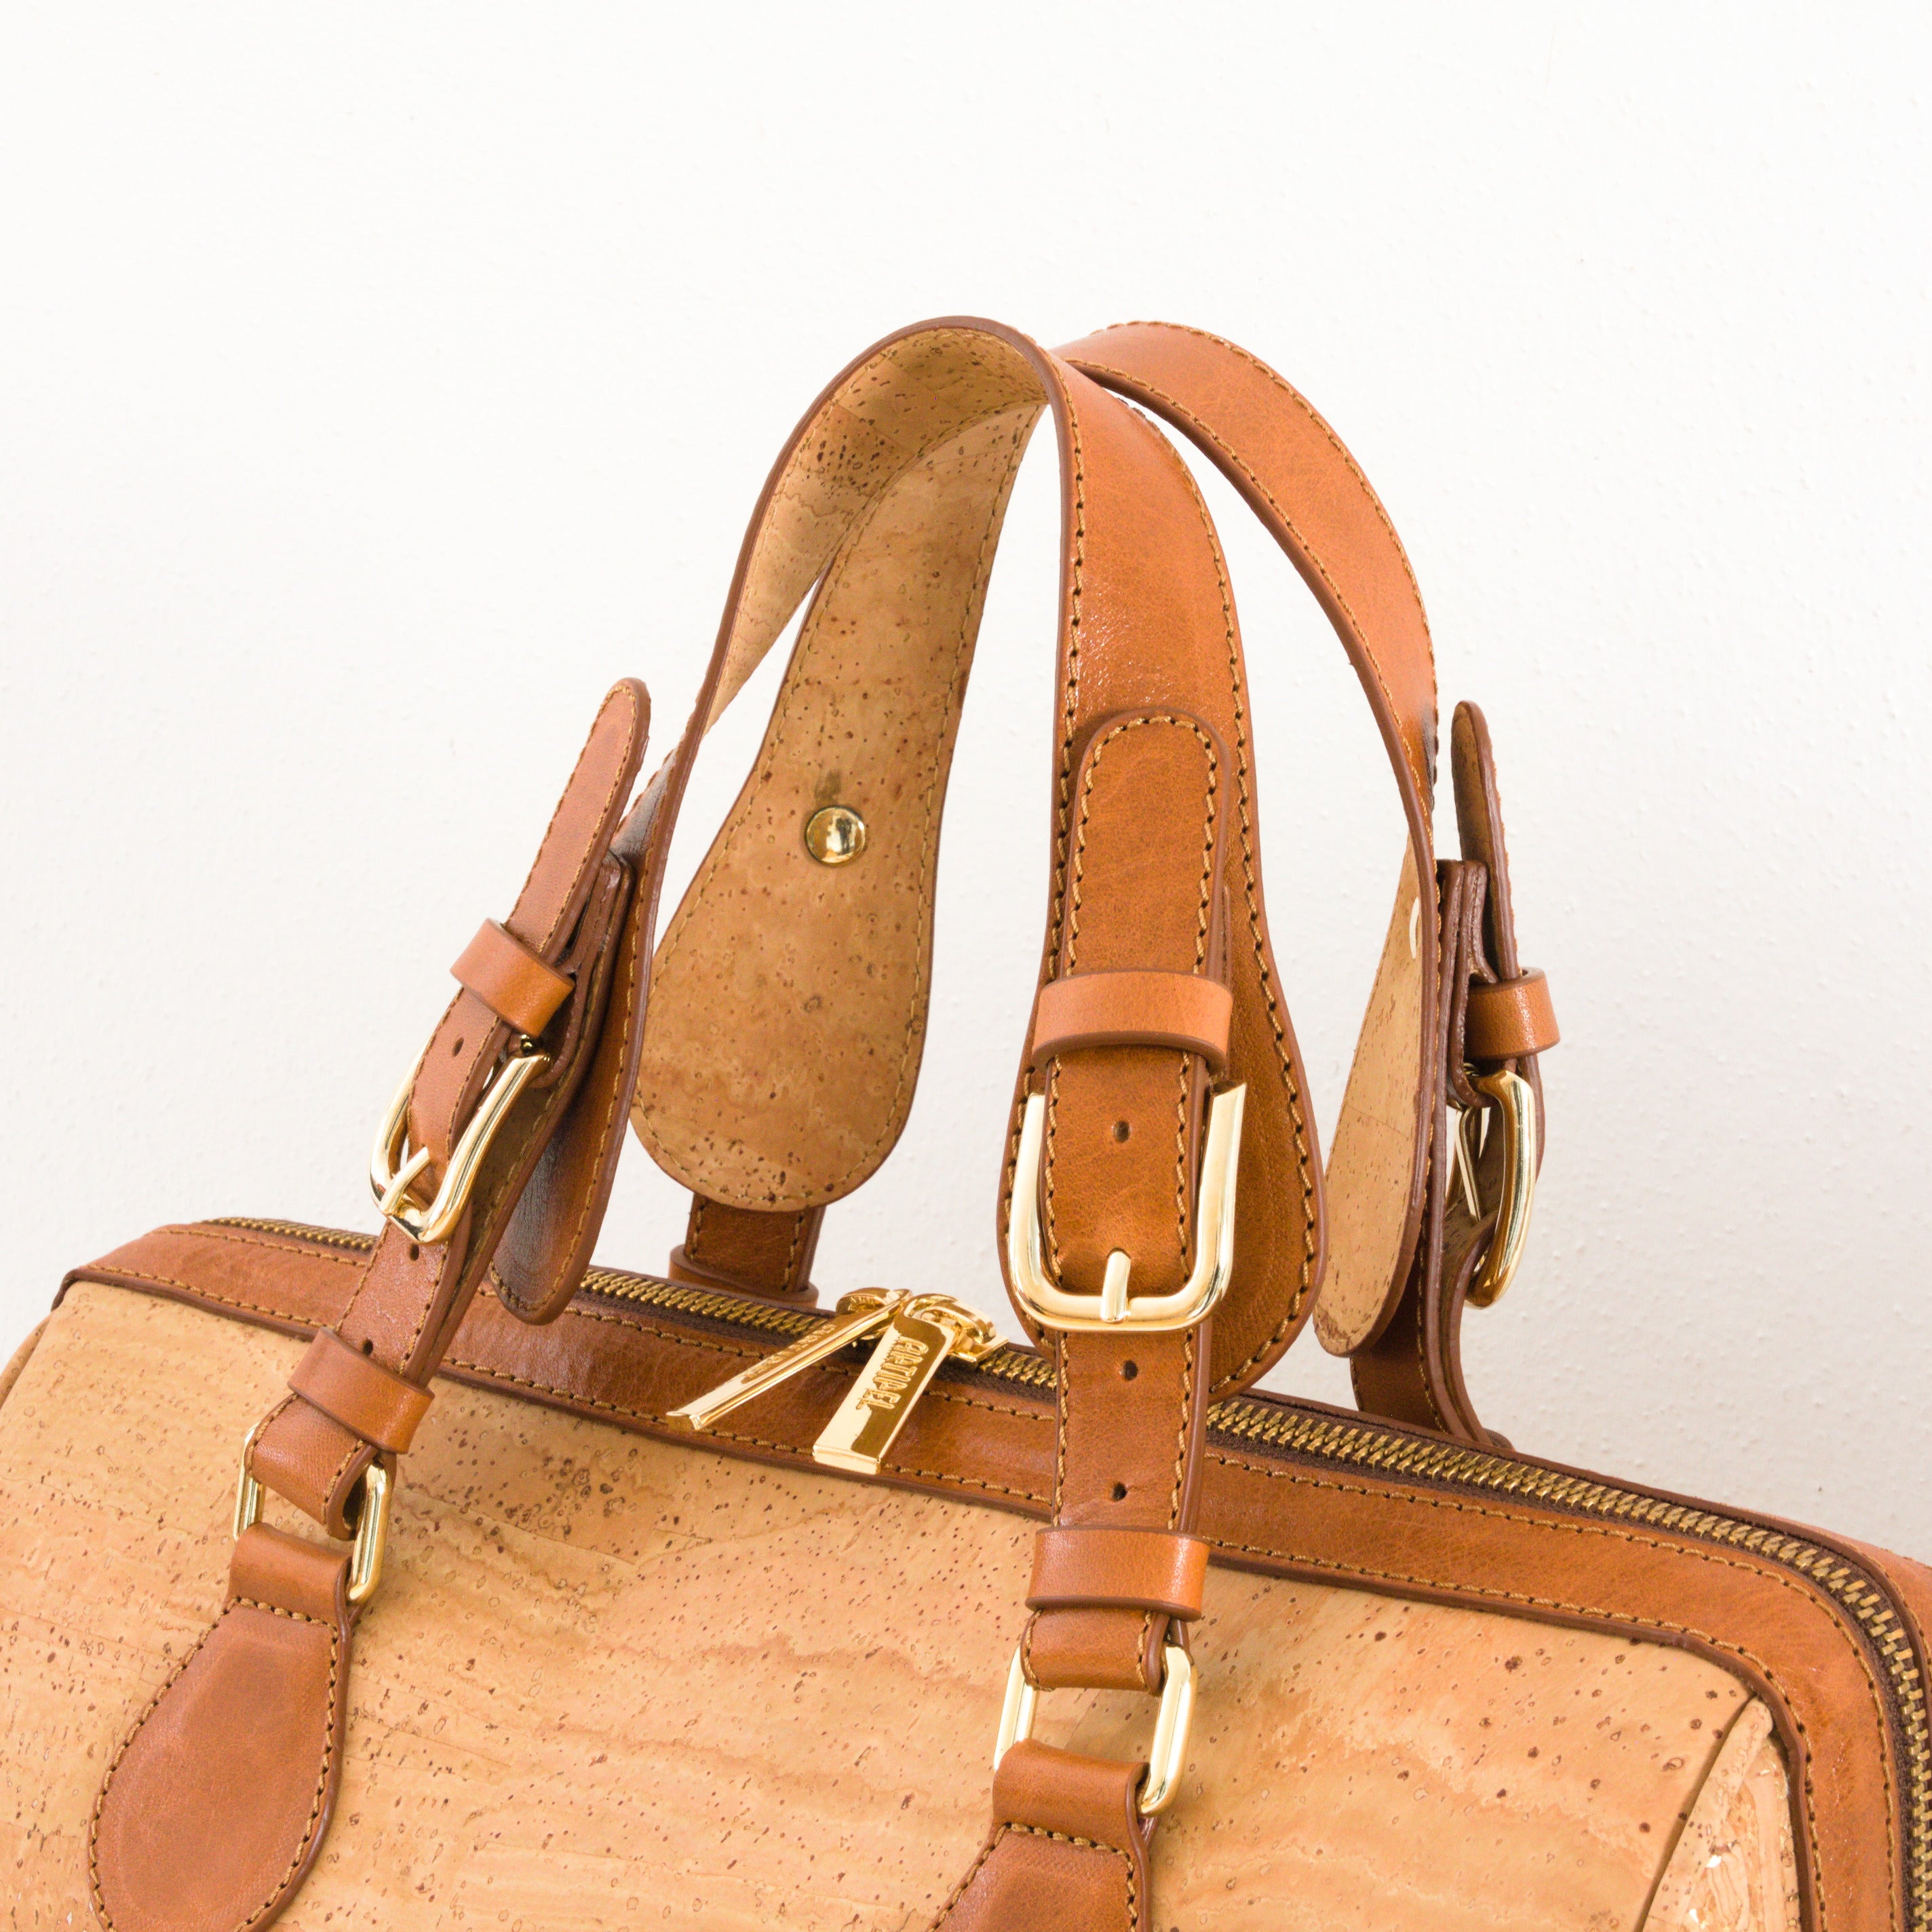 Kork Handtasche * in 2 Größen * Umhängetasche für Frauen * Crossbody * Shopper * handmade in Portugal